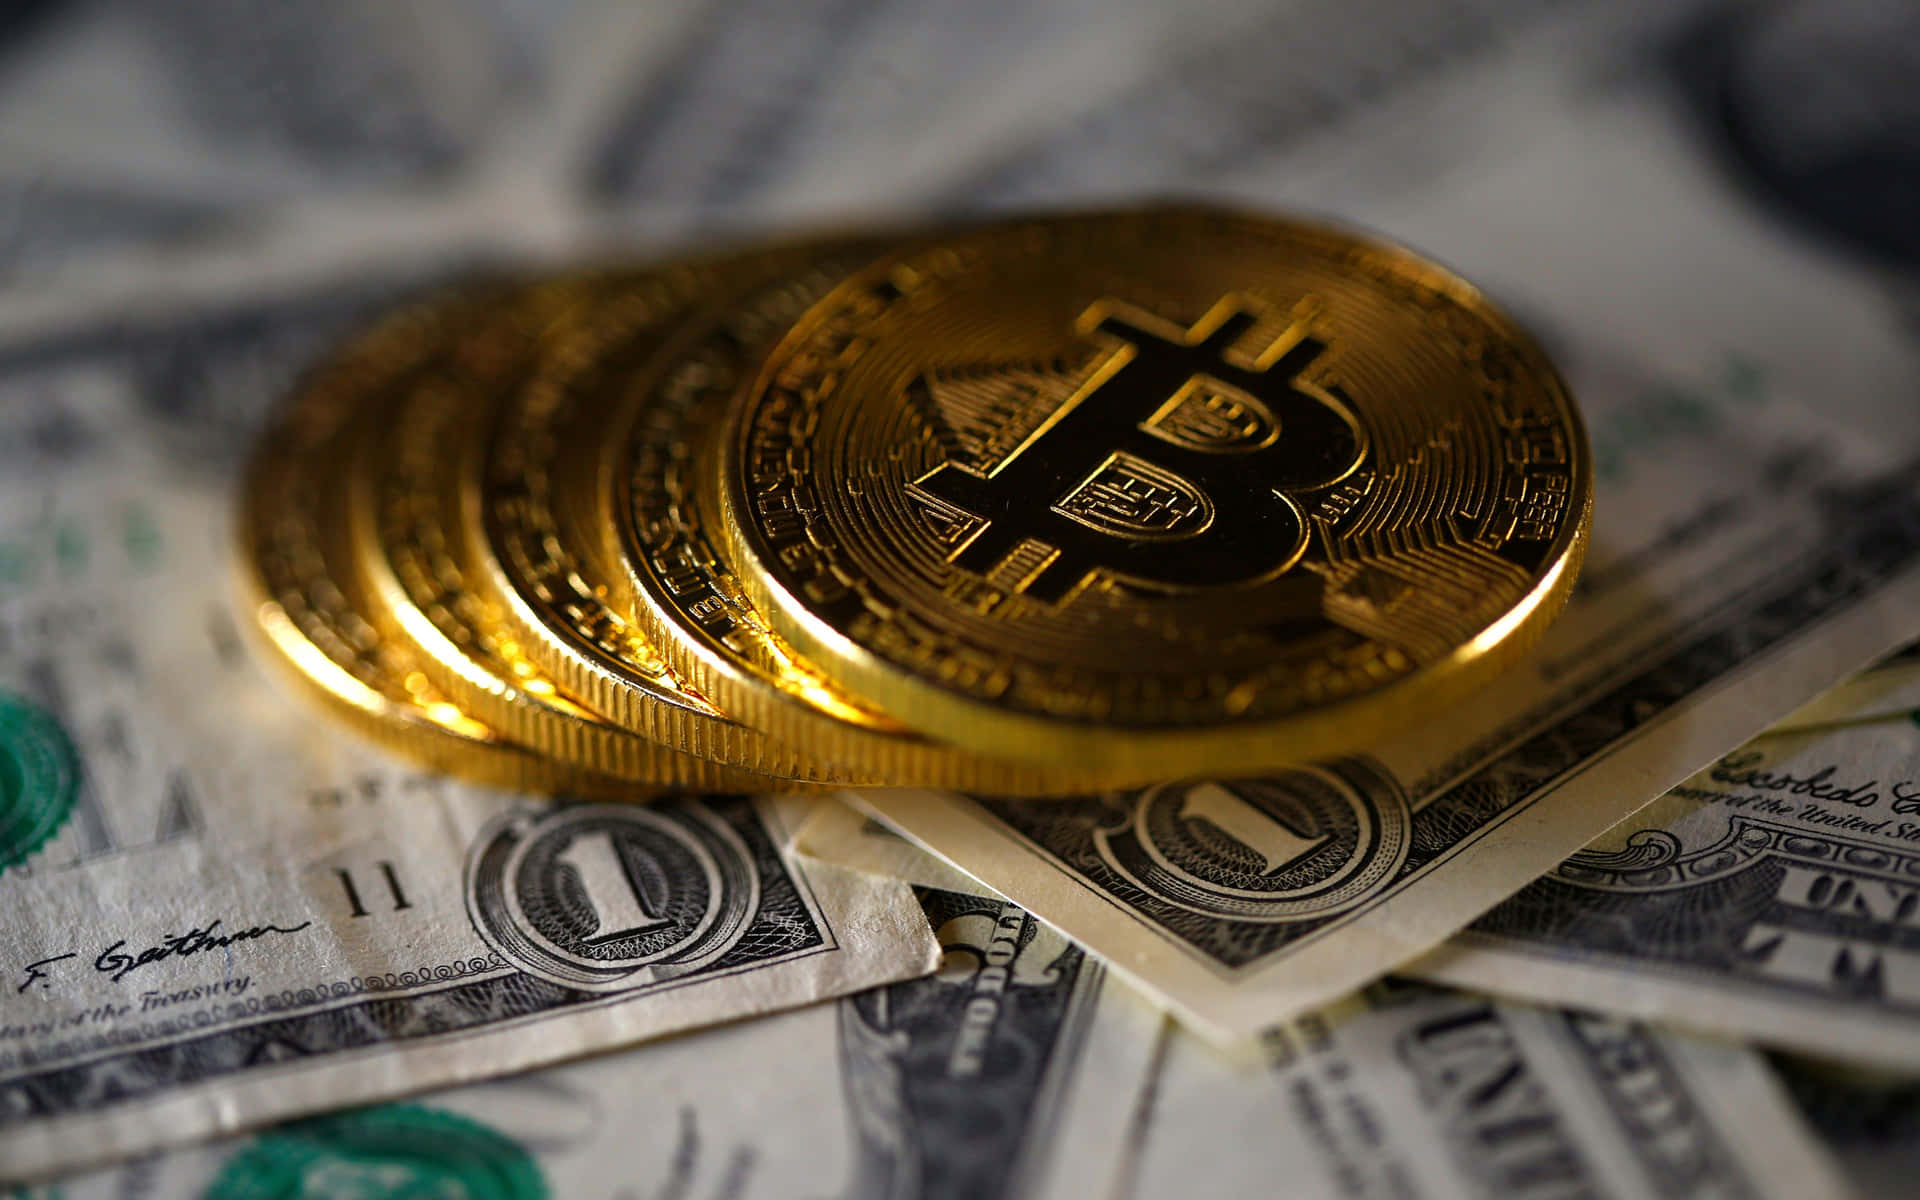 Vonkryptowährungen Begeistert? Verfolge Die Neuesten Nachrichten Über Bitcoin In Der Ultrahohen 4k-auflösung! Wallpaper